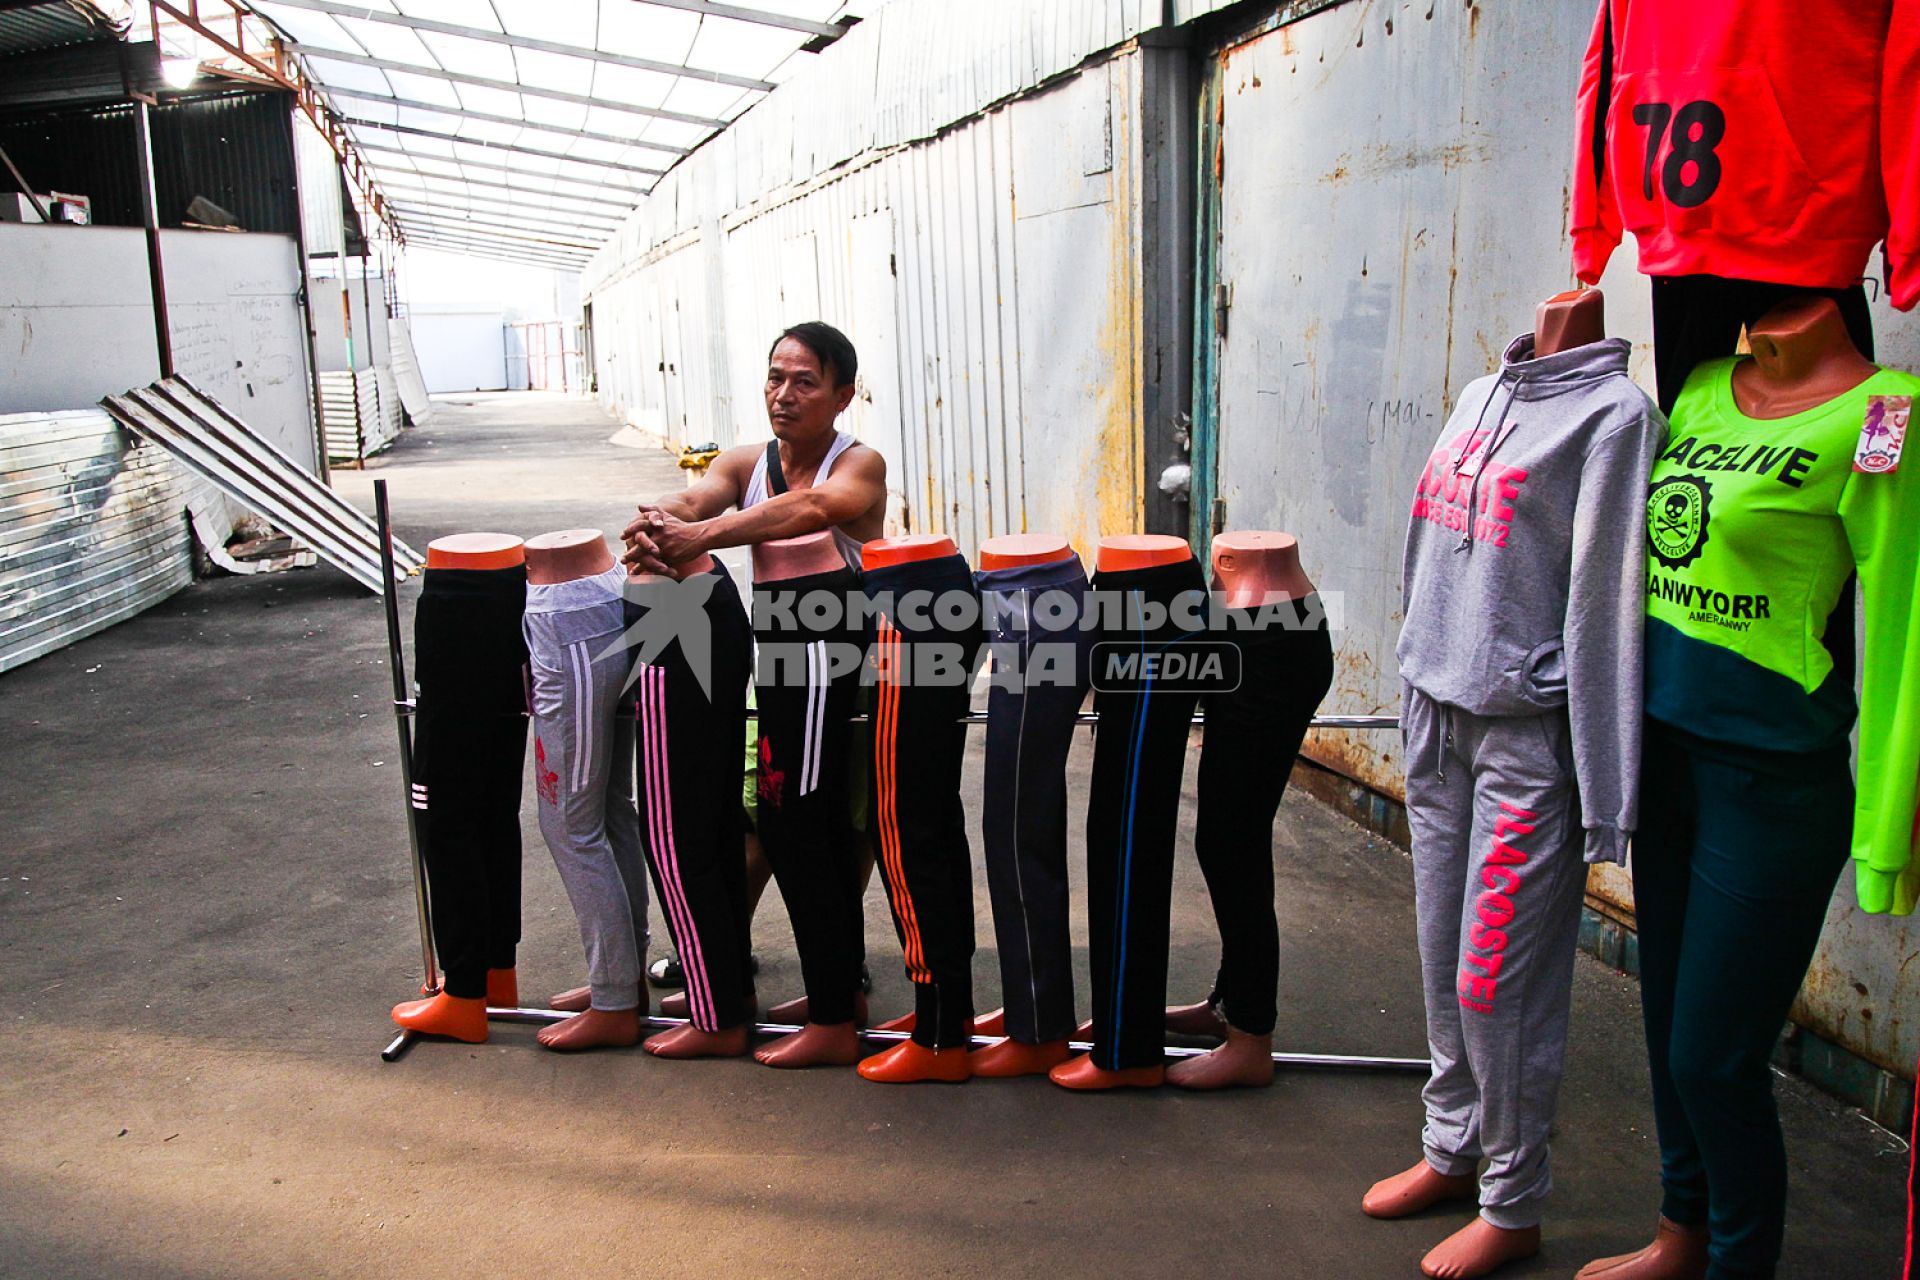 Вьетнамец стоит у манекенов со спортивной одеждой на рынке во время рейда УФМС по поиску нелегальных мигрантов